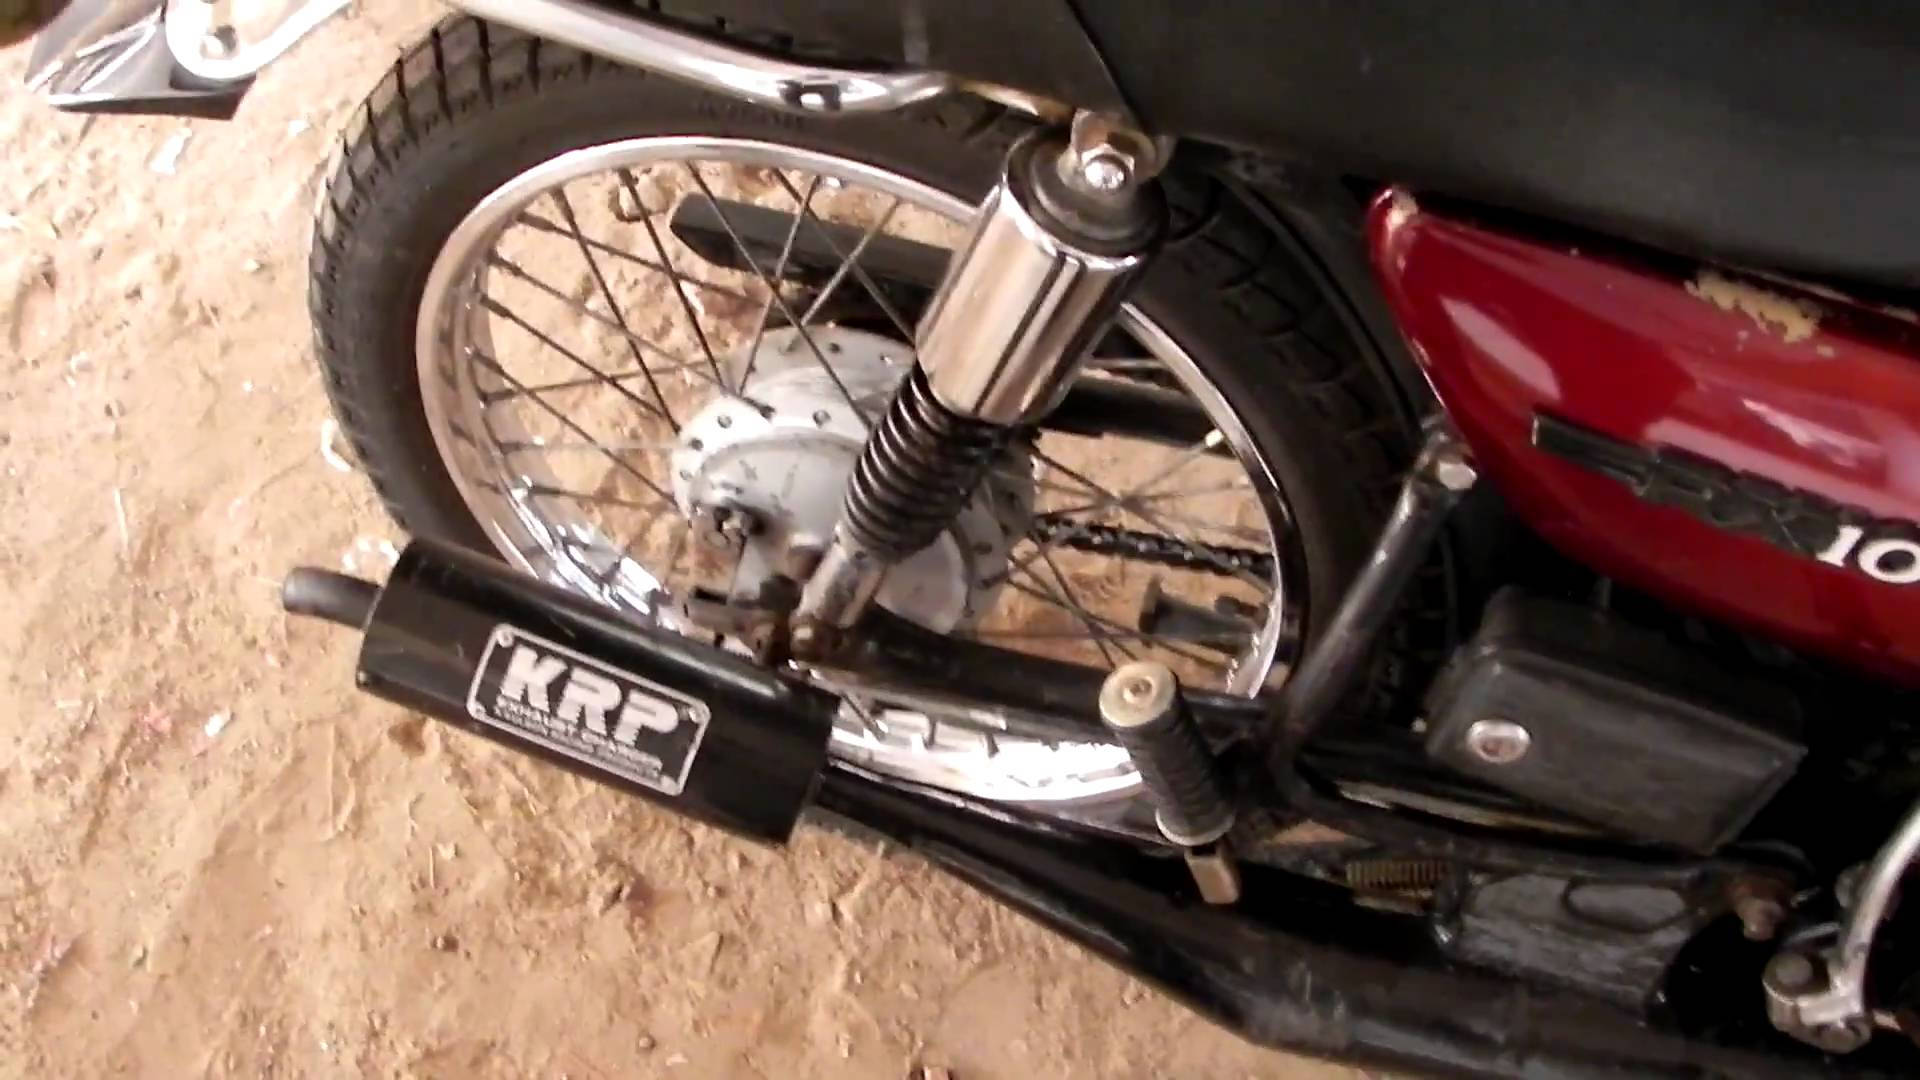 Red Yamaha Rx100 Motorcycle Rear Close-up Wallpaper